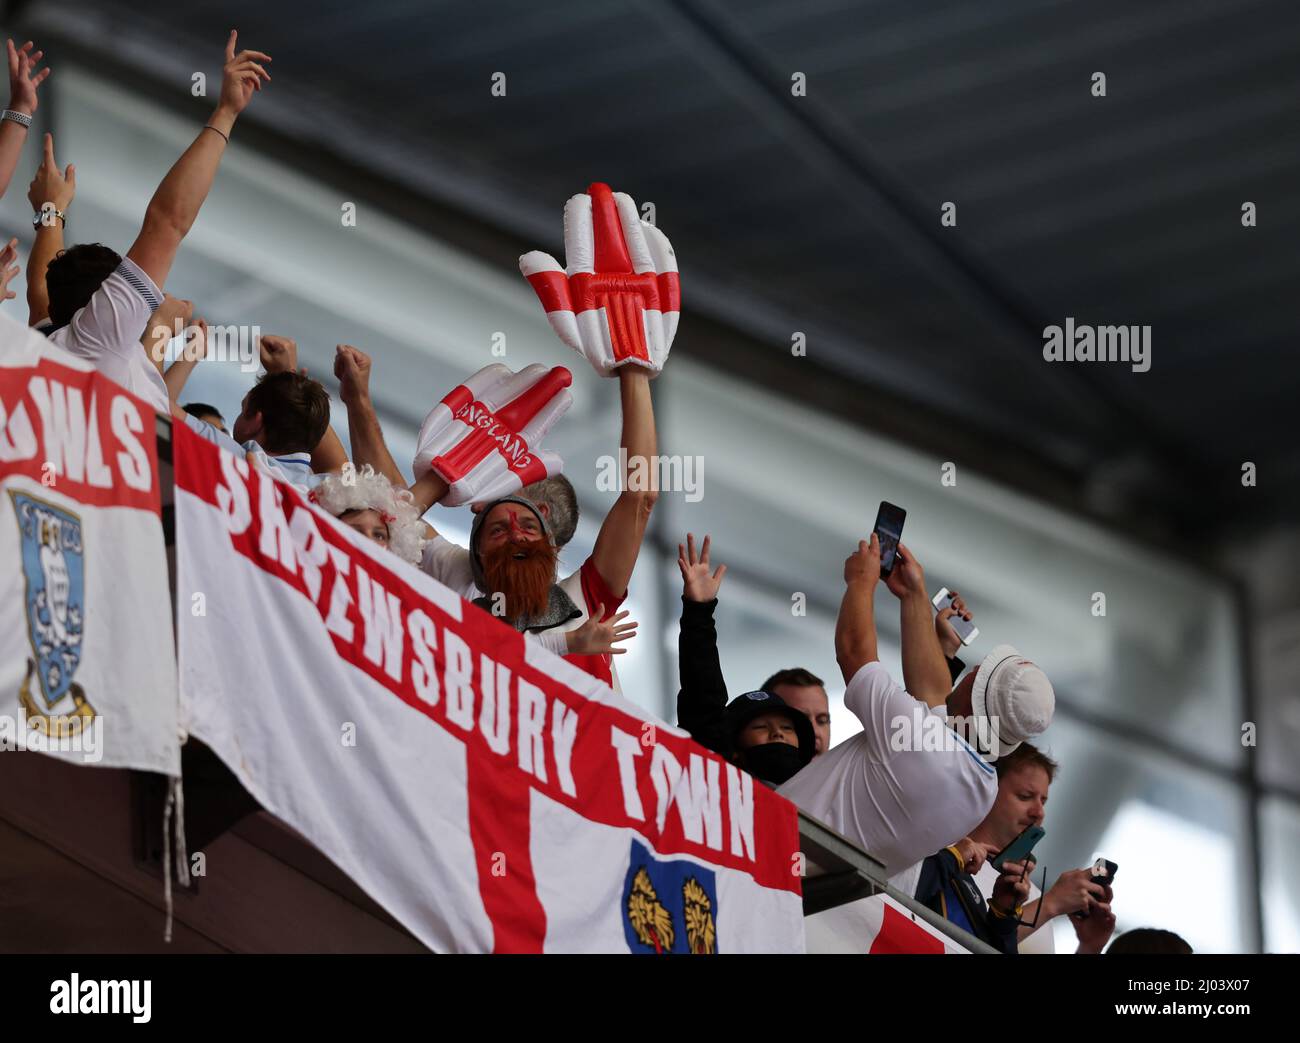 inghilterra FANS UEFA Euro 2020 Stadion Wembley 29.6.2021 Fussball LŠnderspiel Inghilterra - Deutschland Germania Achtelfinale © diebilderwelt / Alamy Stock Foto Stock